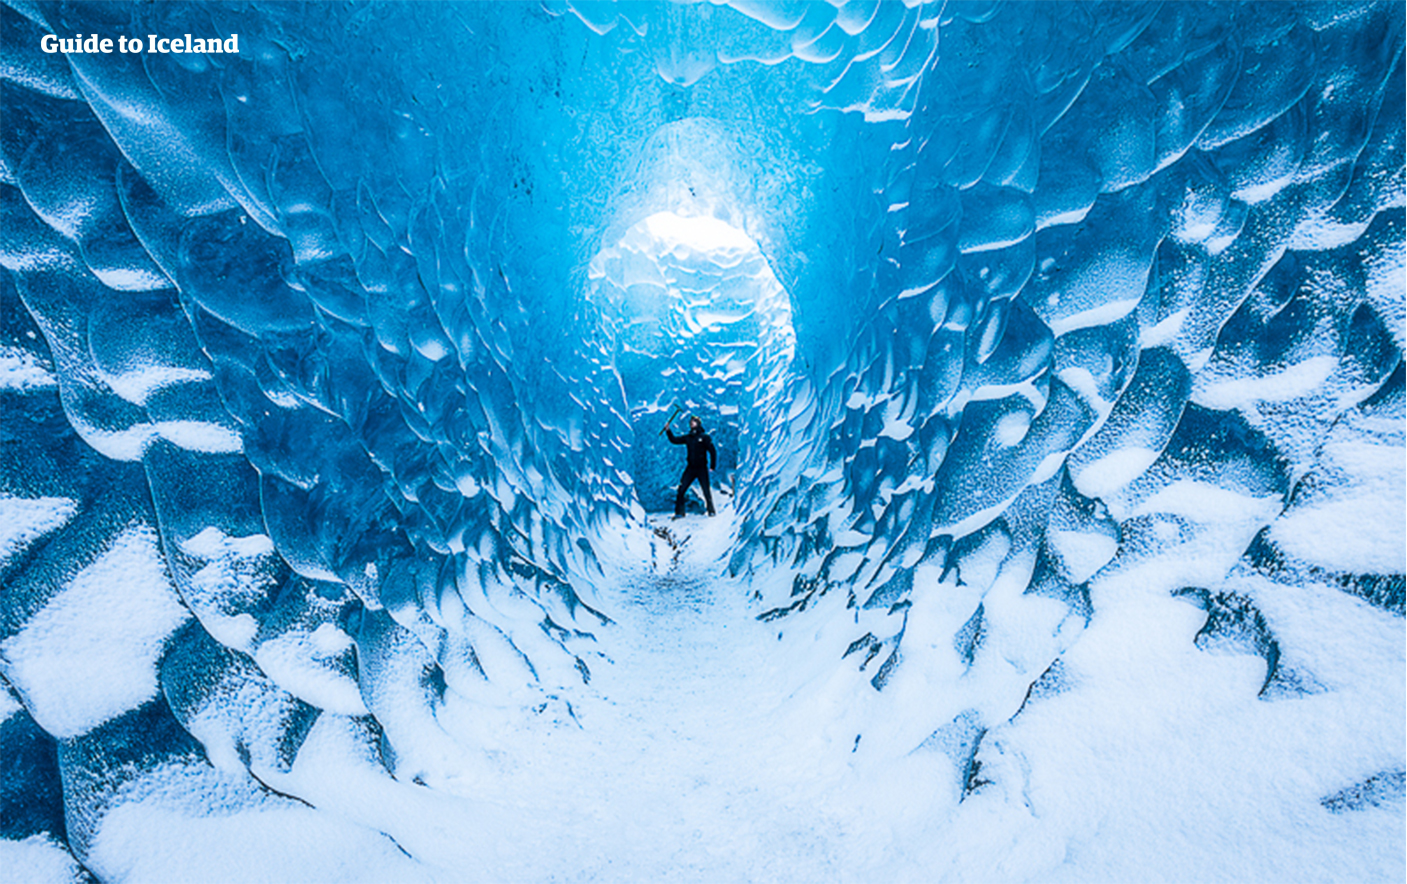 格安氷の洞窟ツアー 南海岸の名瀑 氷河湖の見学付き ホステル泊 Guide To Iceland